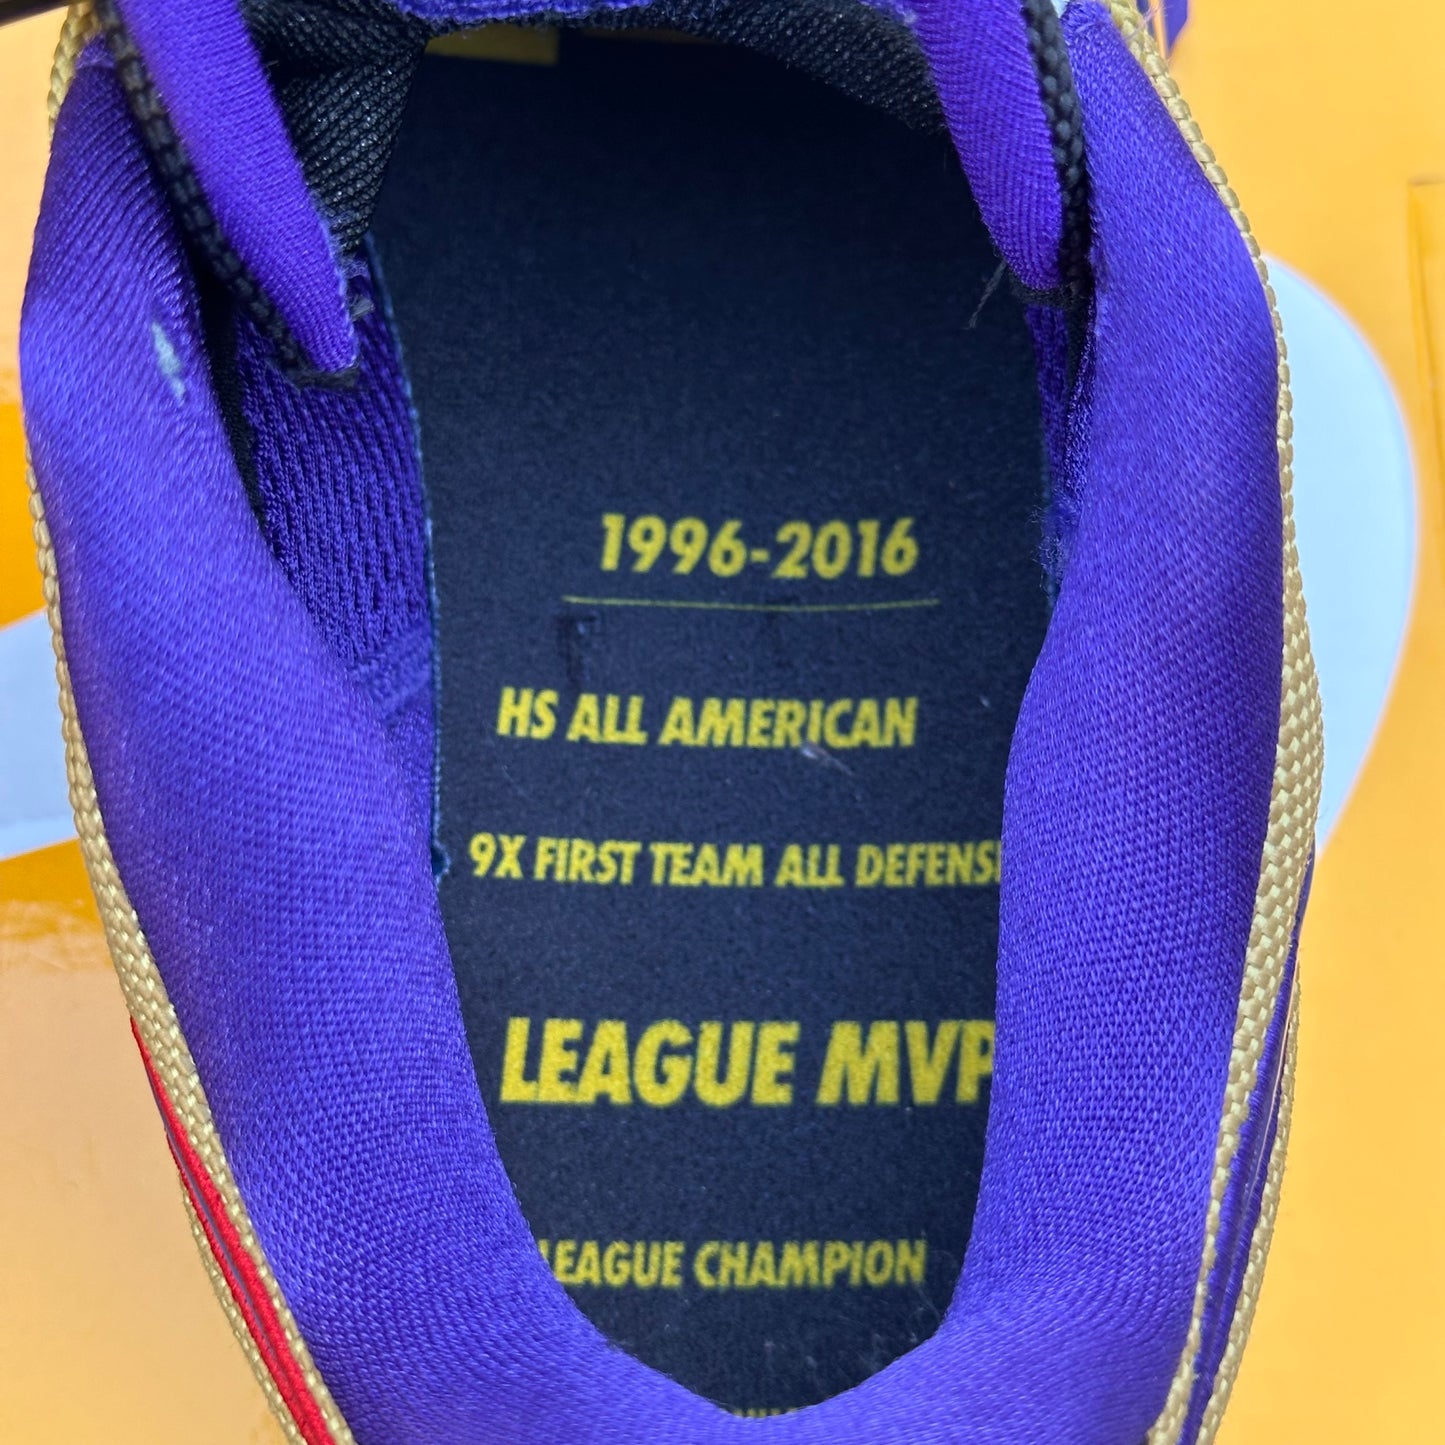 Nike Zoom Kobe 5 Protro x Undefeated Hall Of Fame Size 11